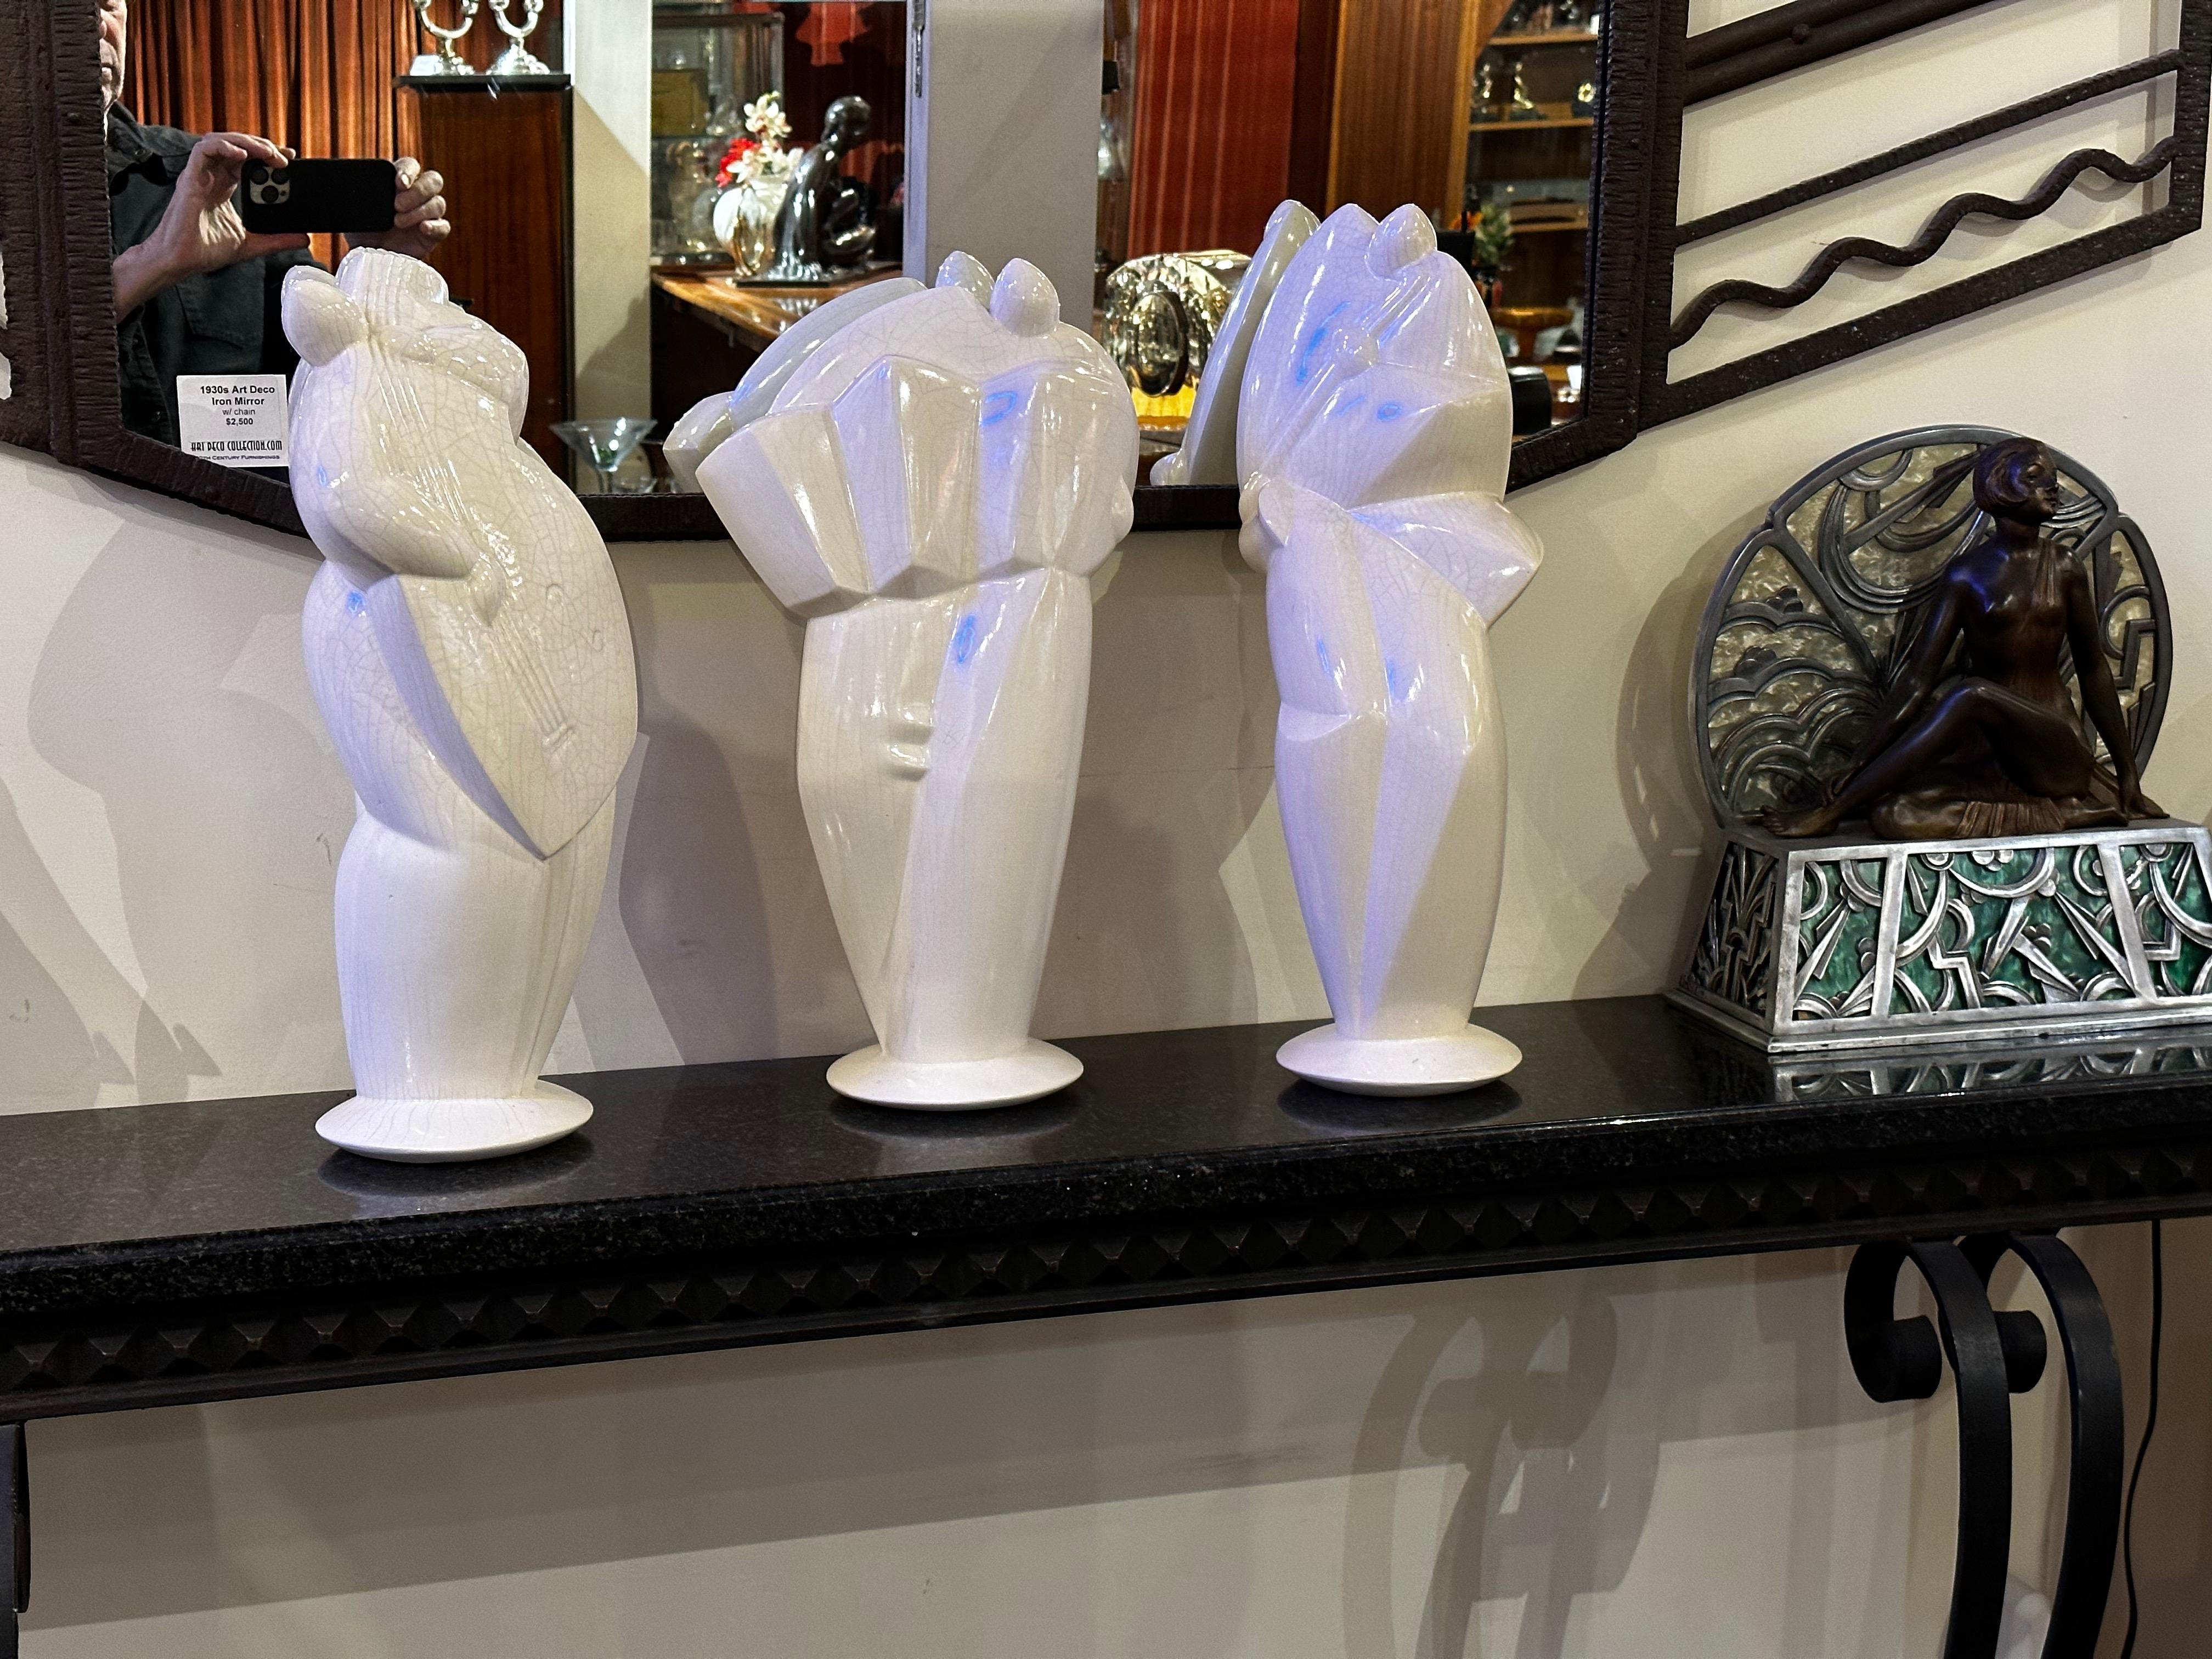 3 grandes sculptures en céramique de style Art déco cubiste représentant des musiciens - Sculpture de Unknown